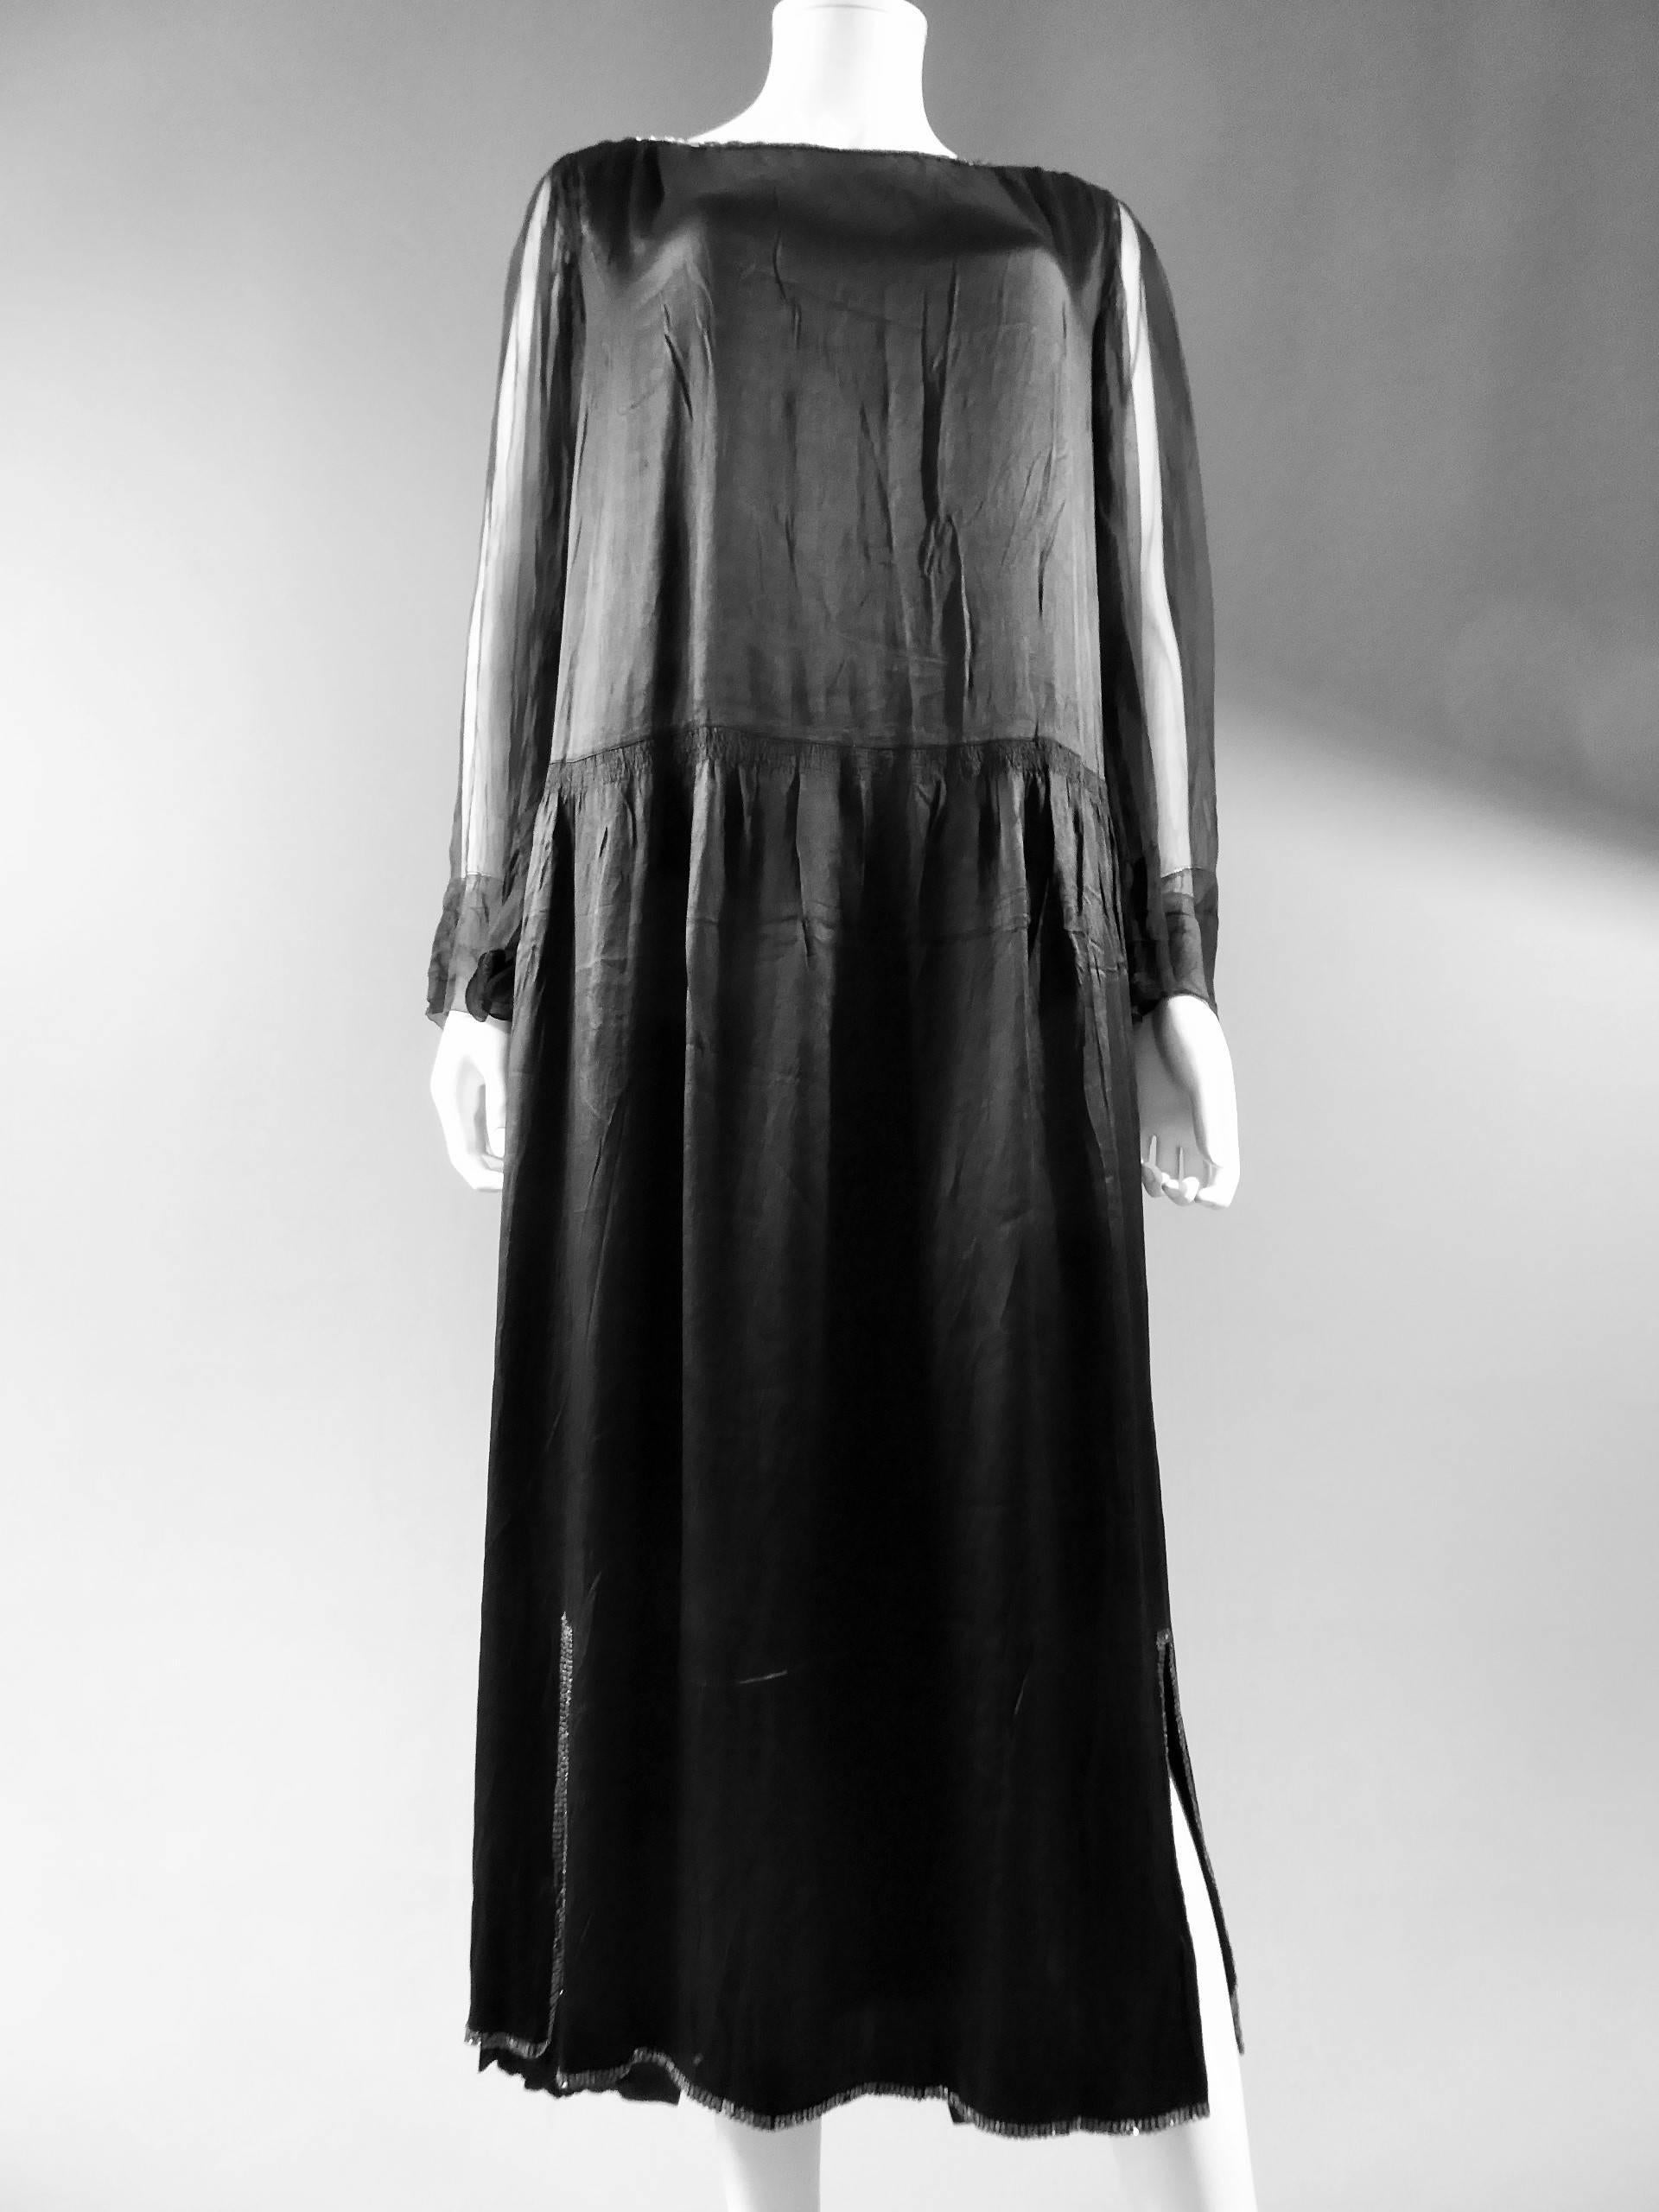 Um 1920.

Frankreich.

Langes Kleid aus schwarzem Seidenkrepp von Jeanne Lanvin Haute Couture. Weite Form, wobei die Rückseite des Kleides länger ist als die Vorderseite. Anpassen des Rocks, der unten seitlich geteilt ist und an der vorderen Spitze